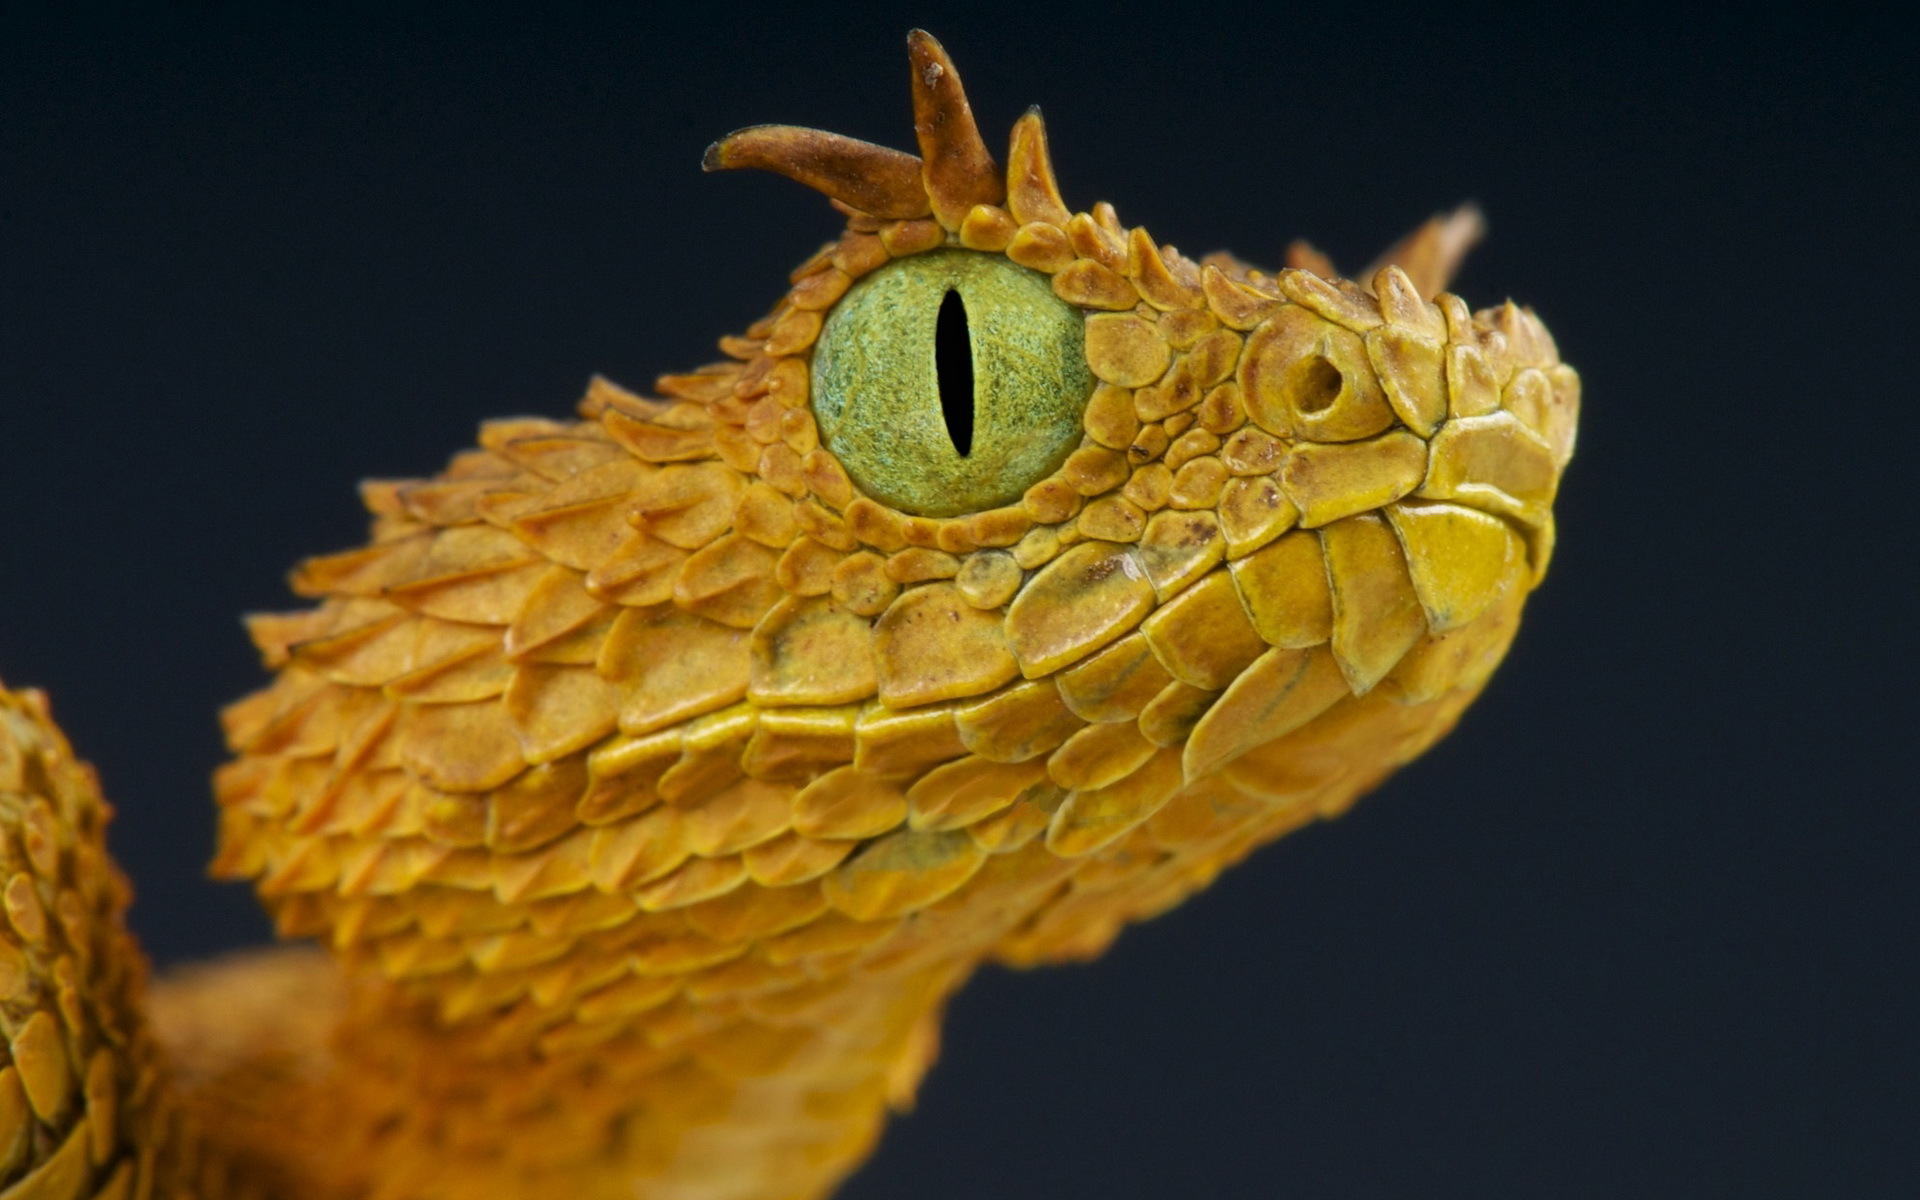 Descarga gratuita de fondo de pantalla para móvil de Víbora, Reptiles, Animales.